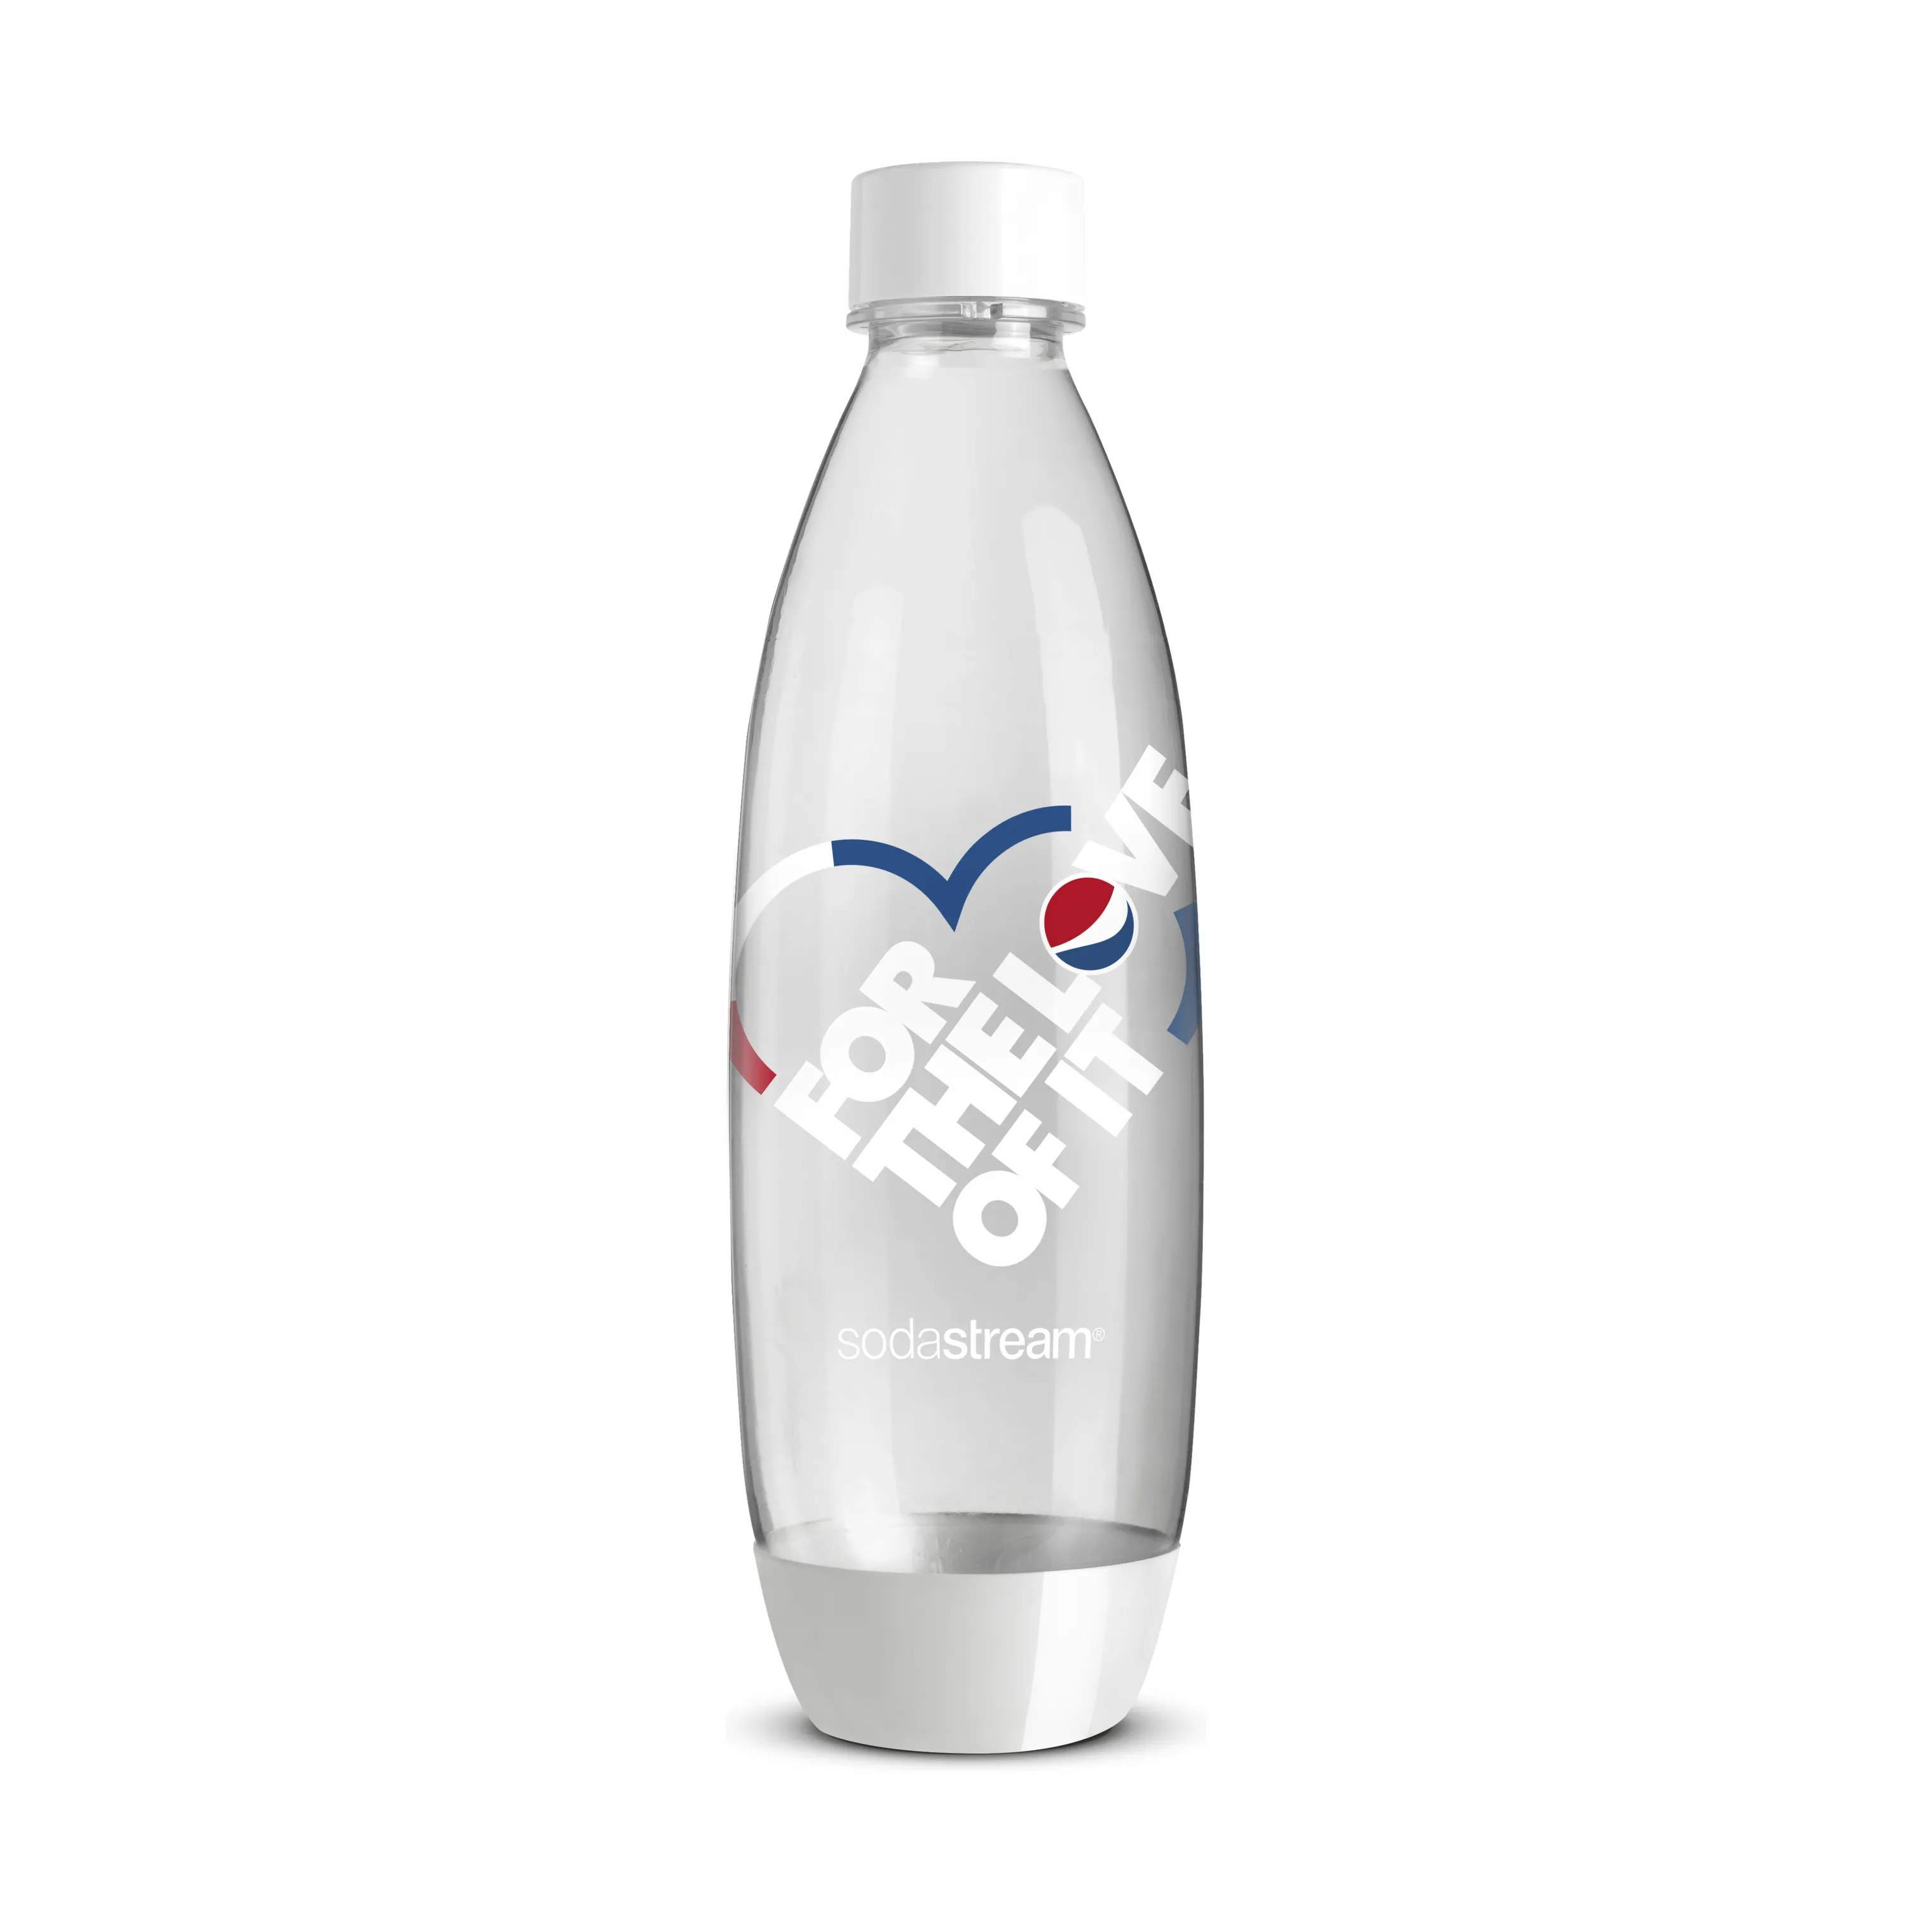 SodaStream flasker til sodavandsmaskine Fuse Flaske - Pepsi